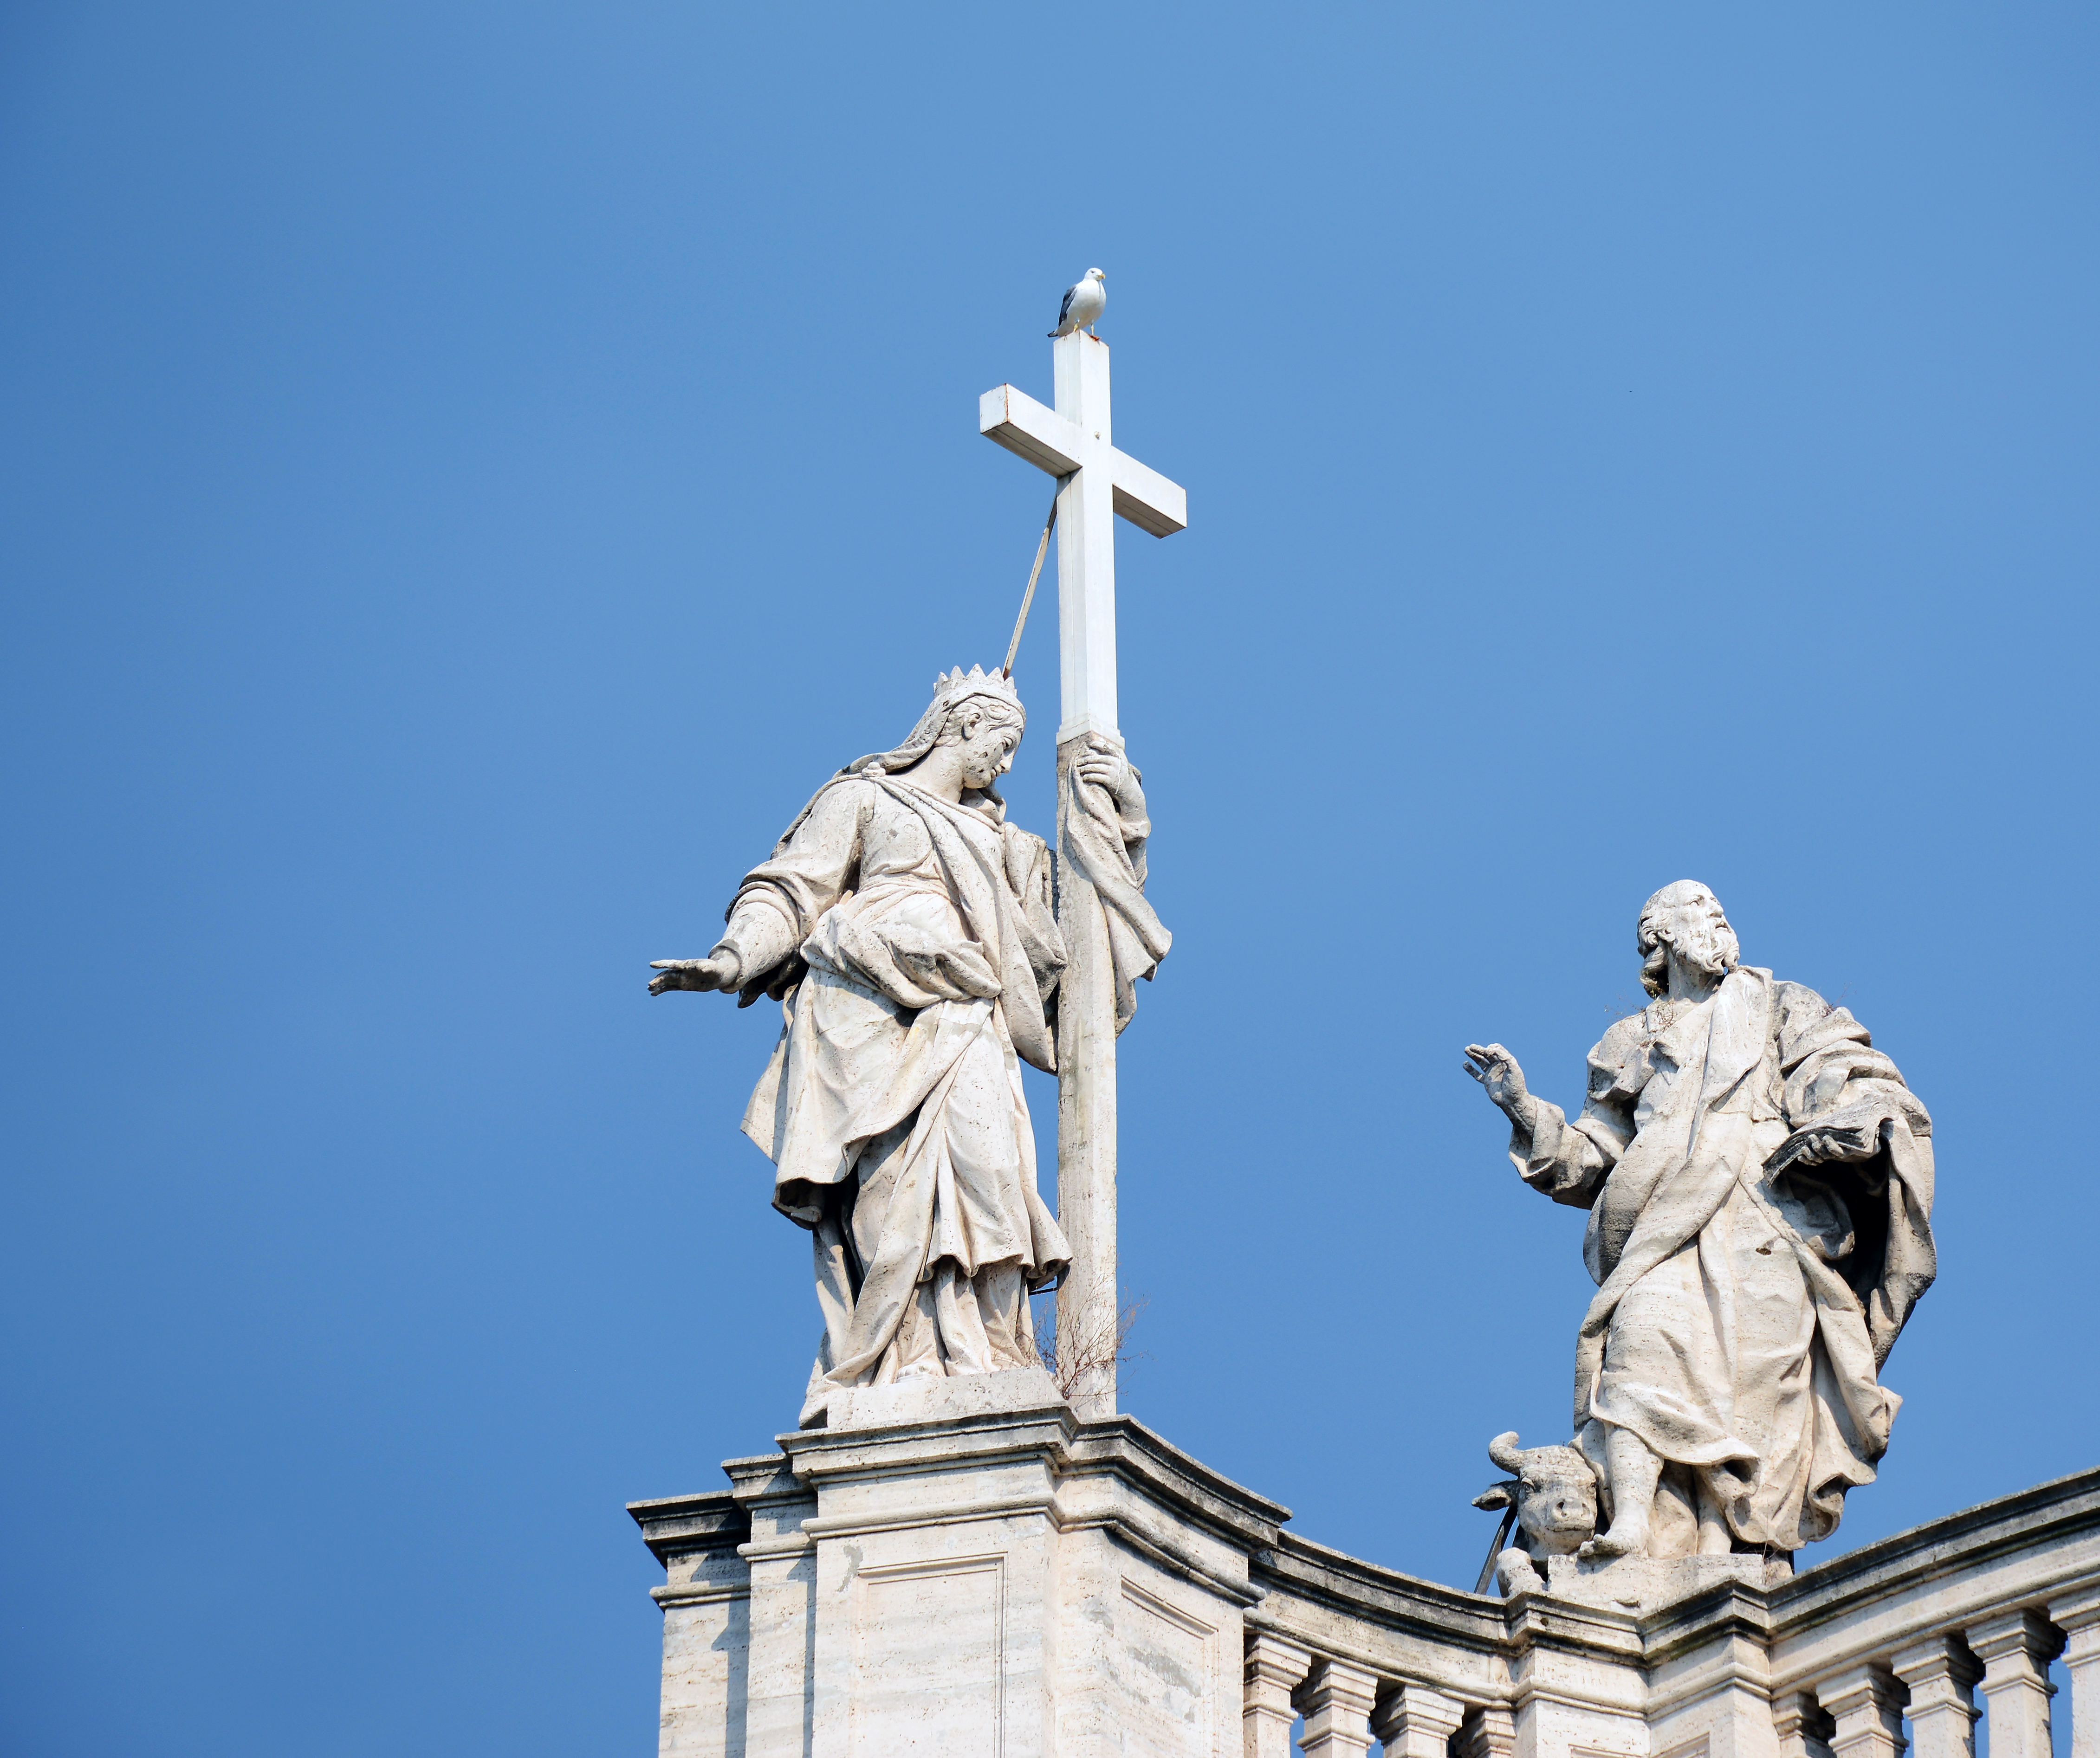 Statue of Saint Helena on Santa Croce in Gerusalemme (Rome)